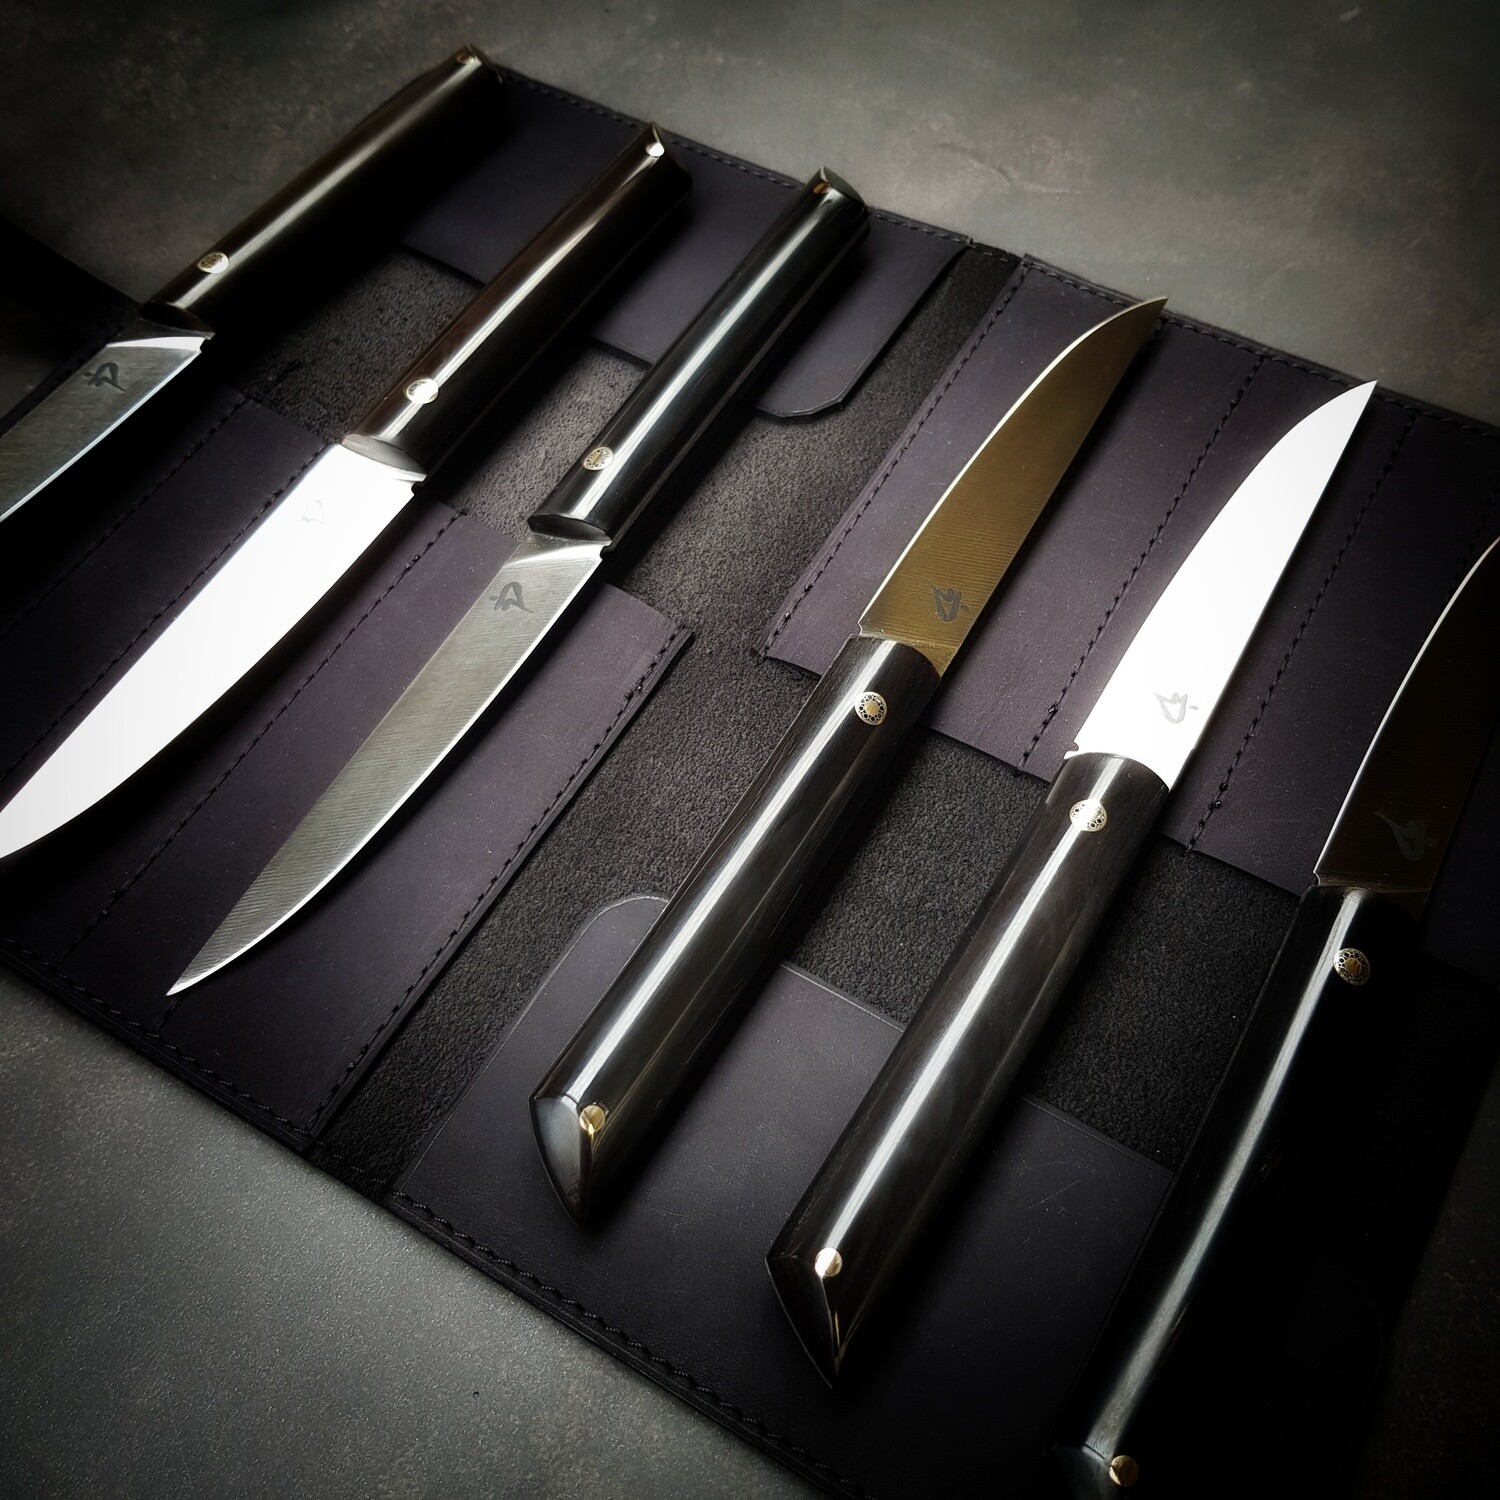 Table knives / steak knives